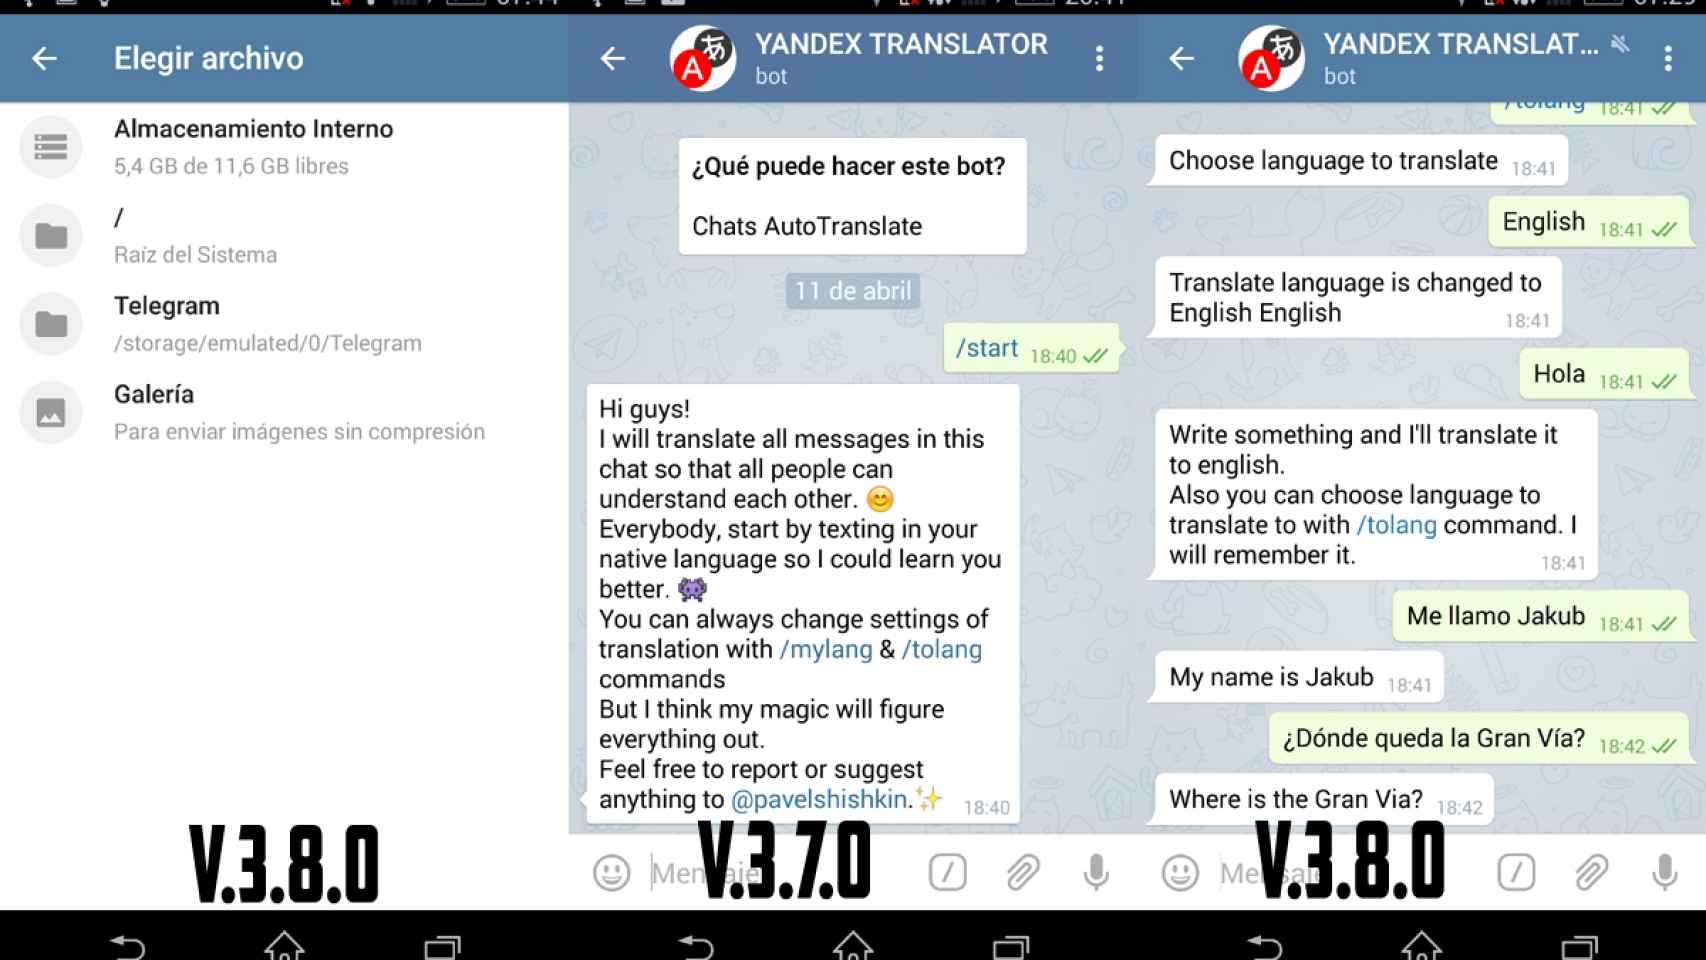 La nueva versión de Telegram trae retoques en la interfaz y bots 2.0